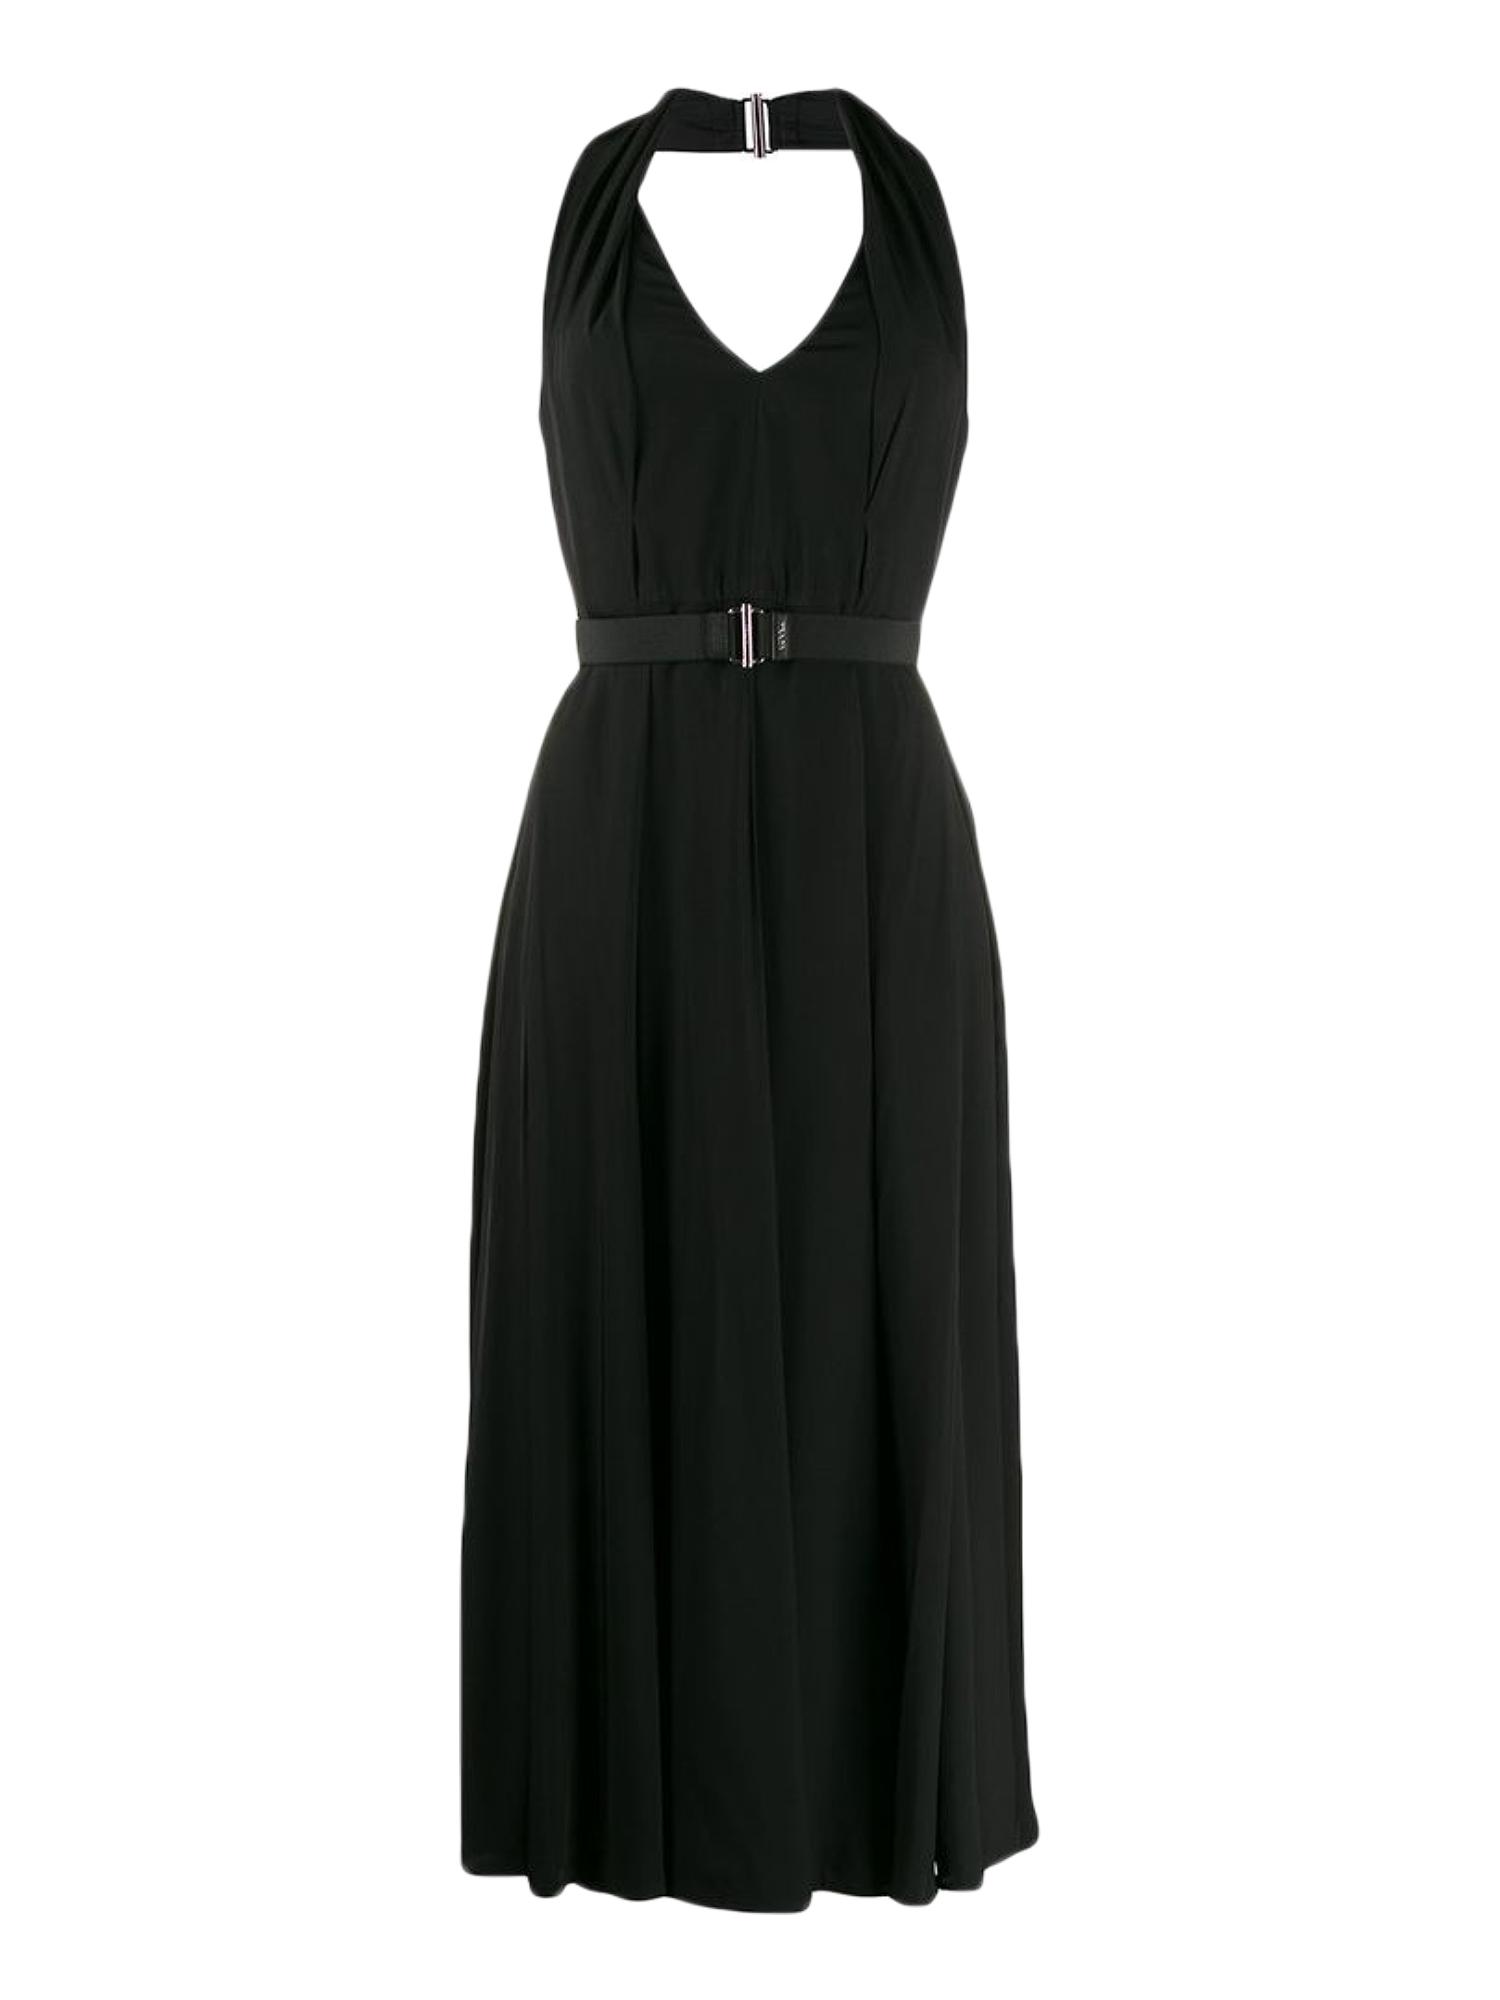 Prada Belted Halterneck Dress in Black | Lyst